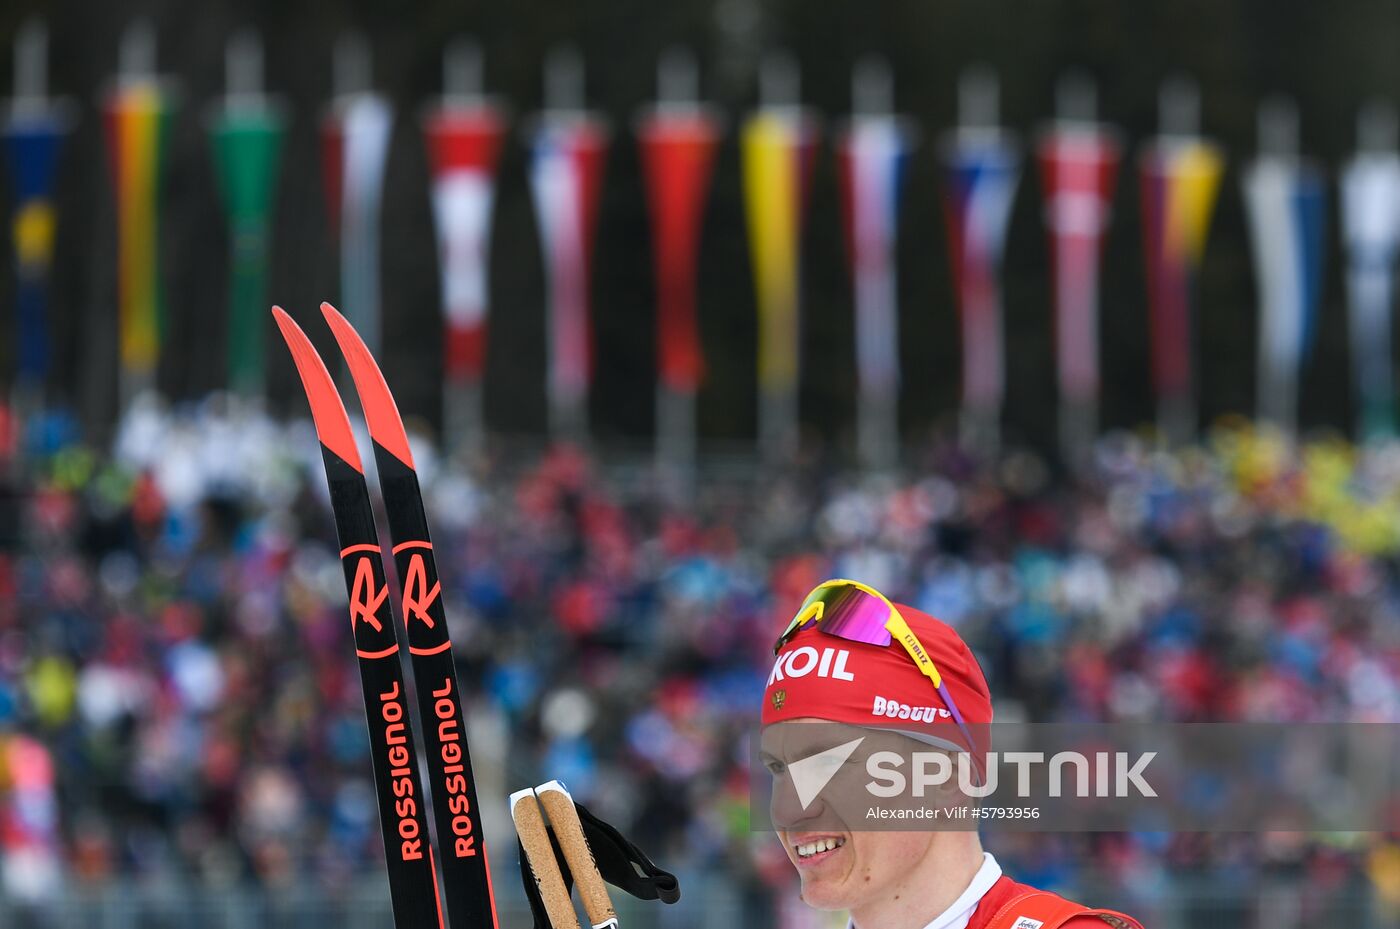 Austria Ski Worlds Team Sprint Men